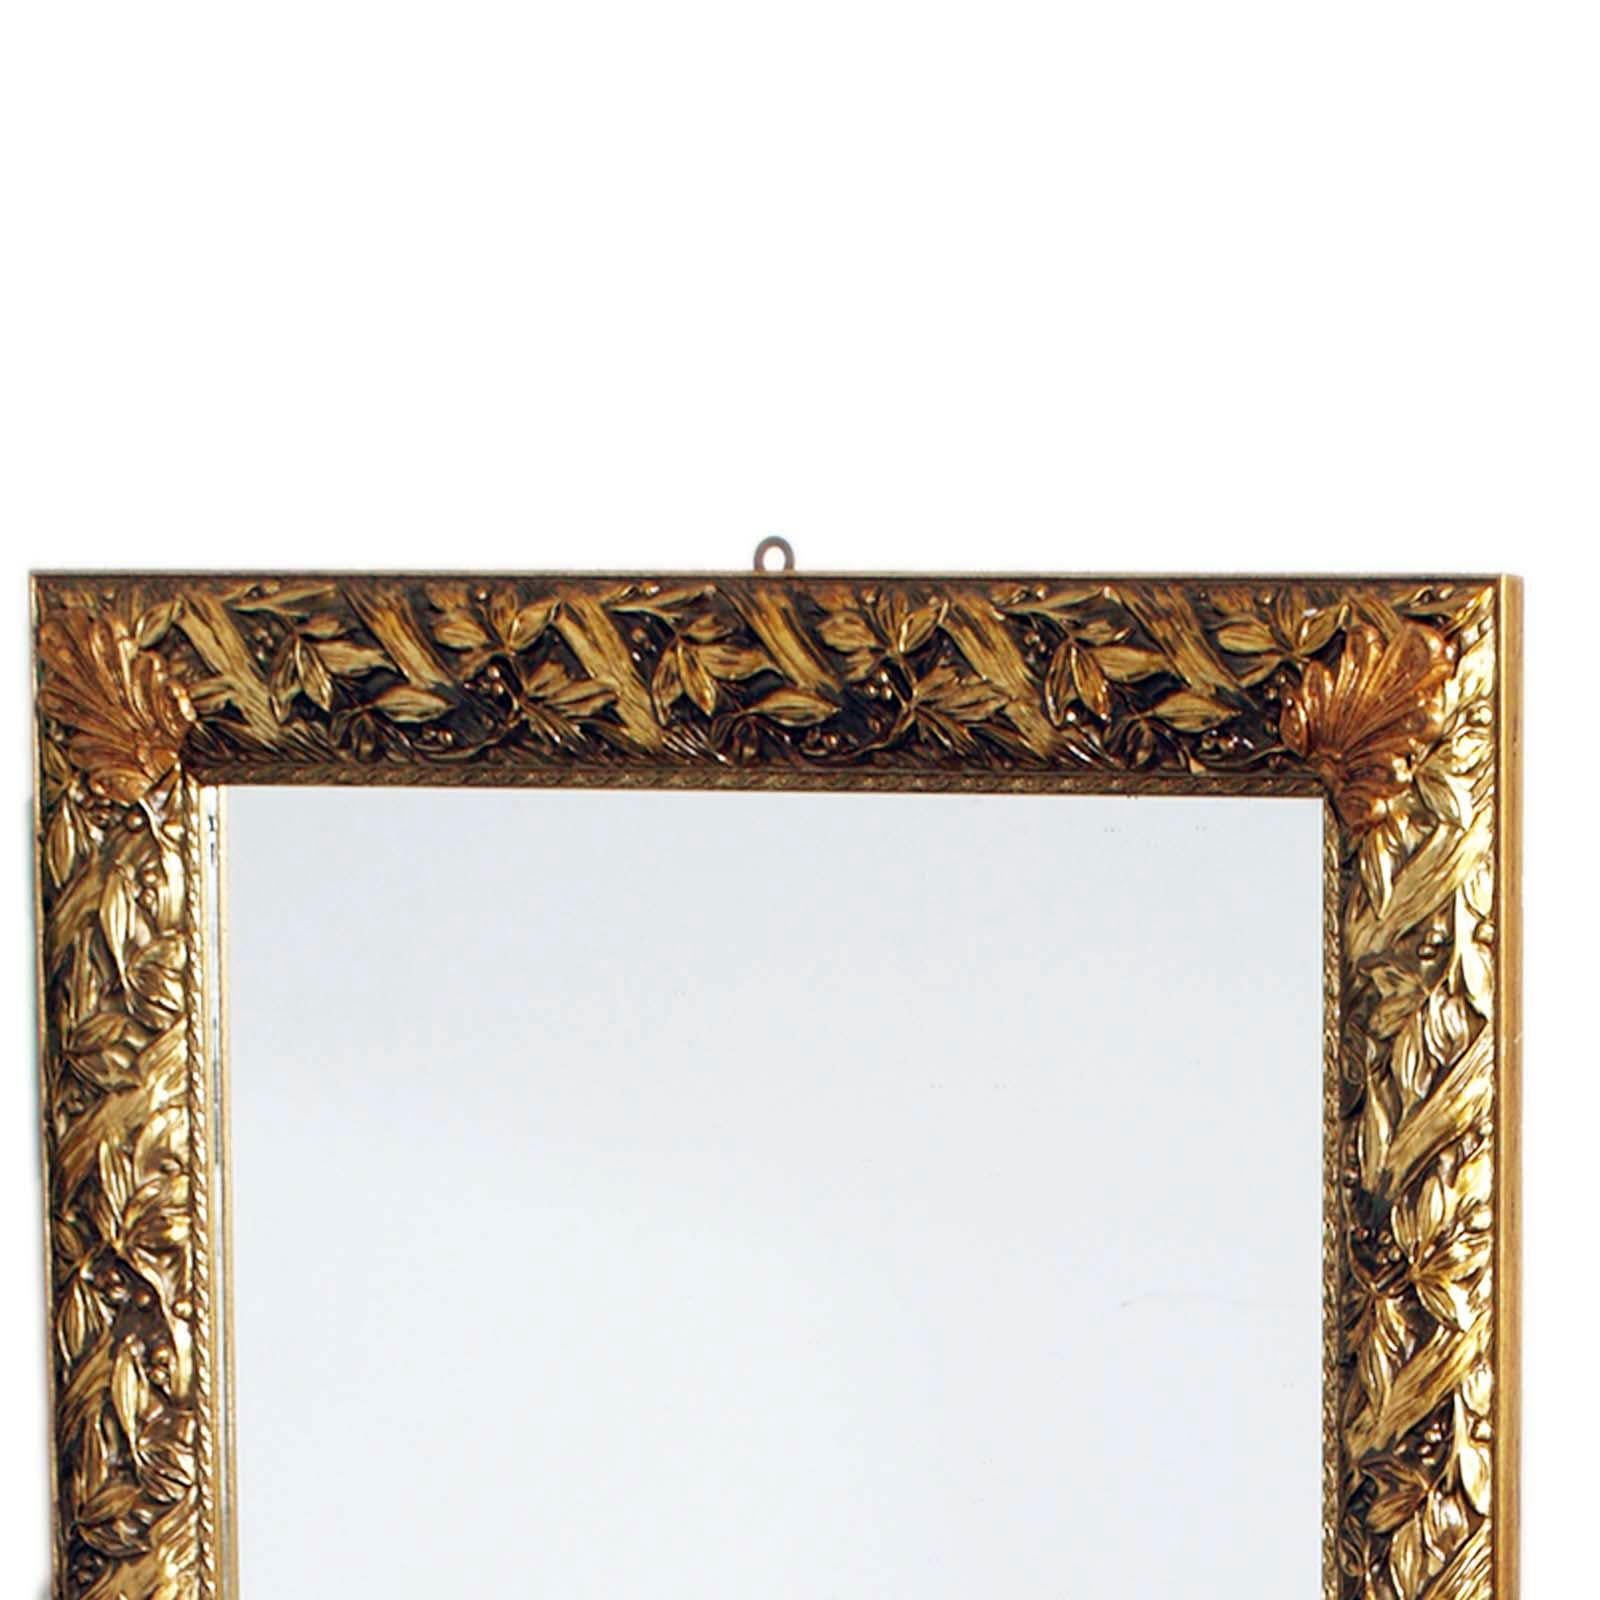 Précieux et élégant miroir Art Nouveau italien florentin avec cadre doré sculpté par l'artisanat florentin, vers 1940.

Mesure cm : H 100, L 78, P 4.